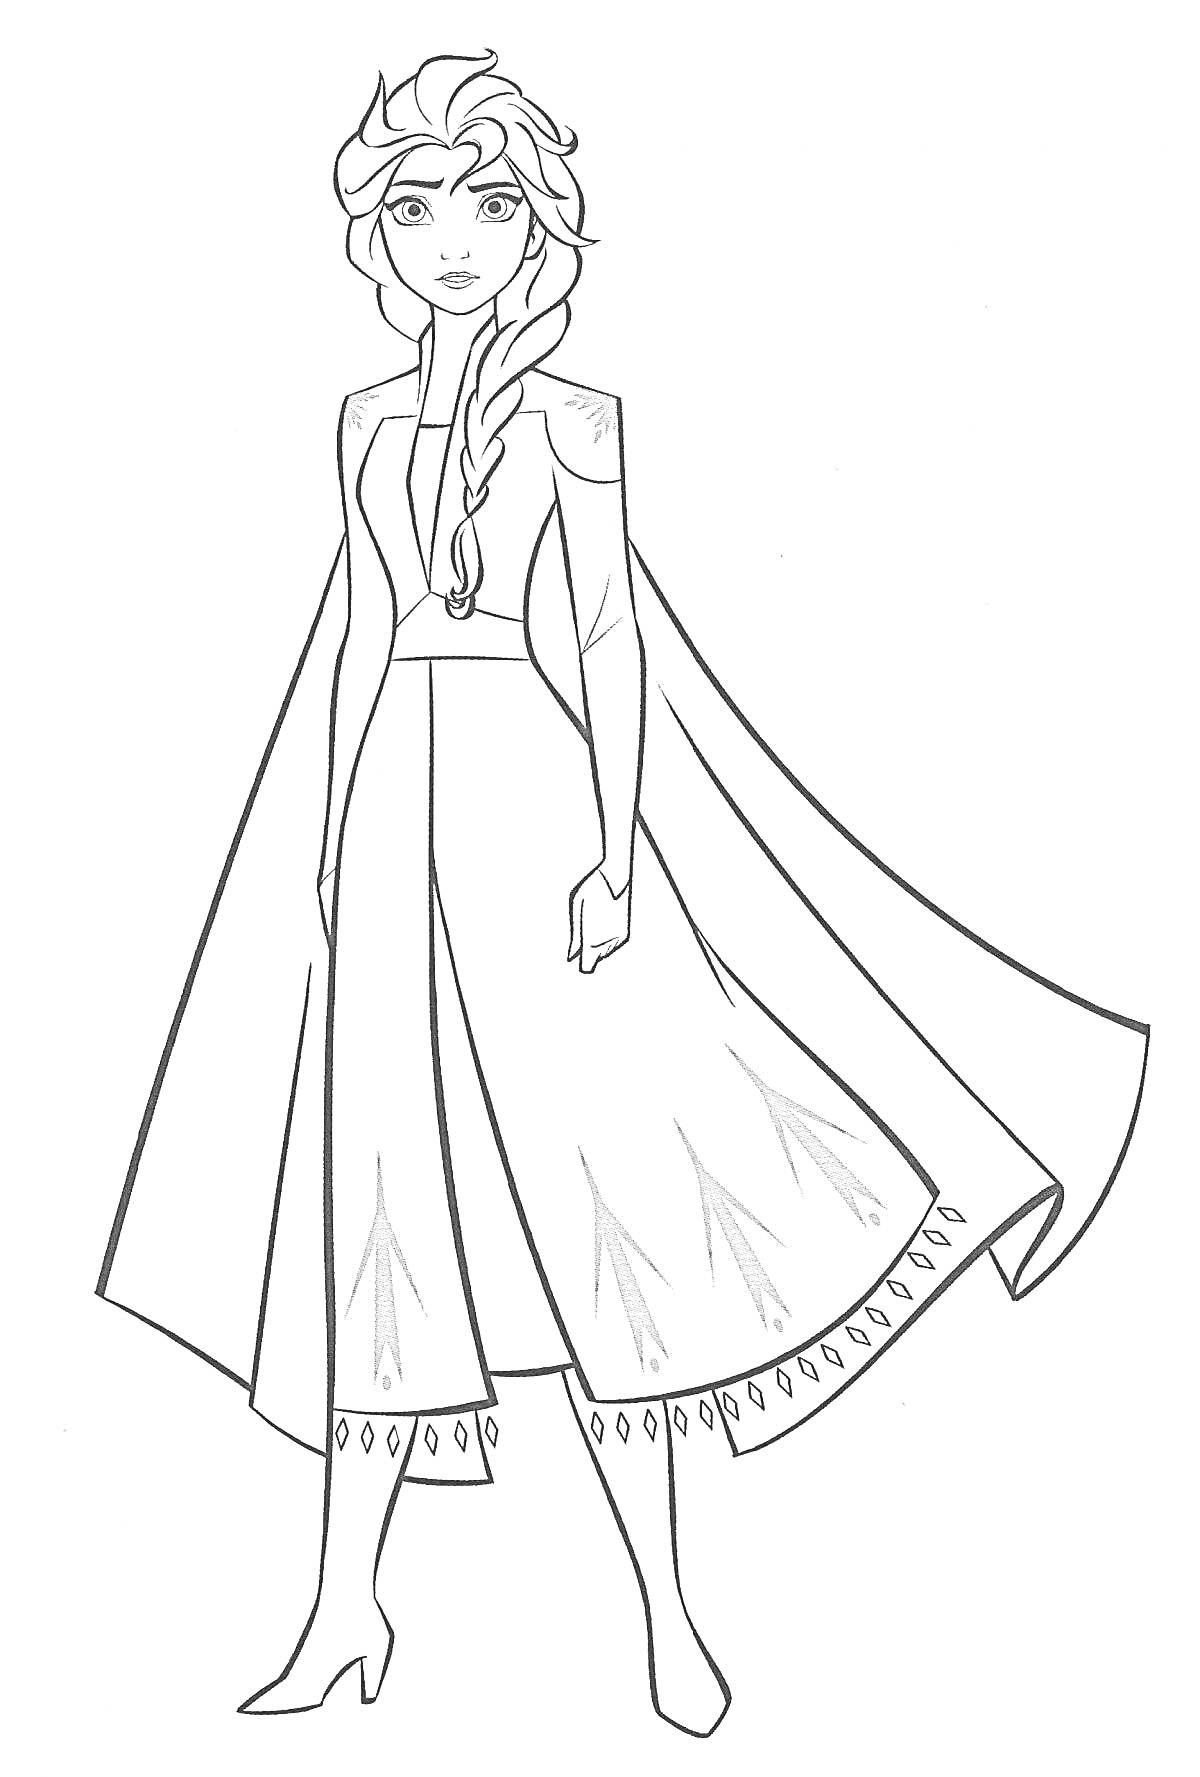 Раскраска Эльза принцесса в длинном платье с плащом и косой